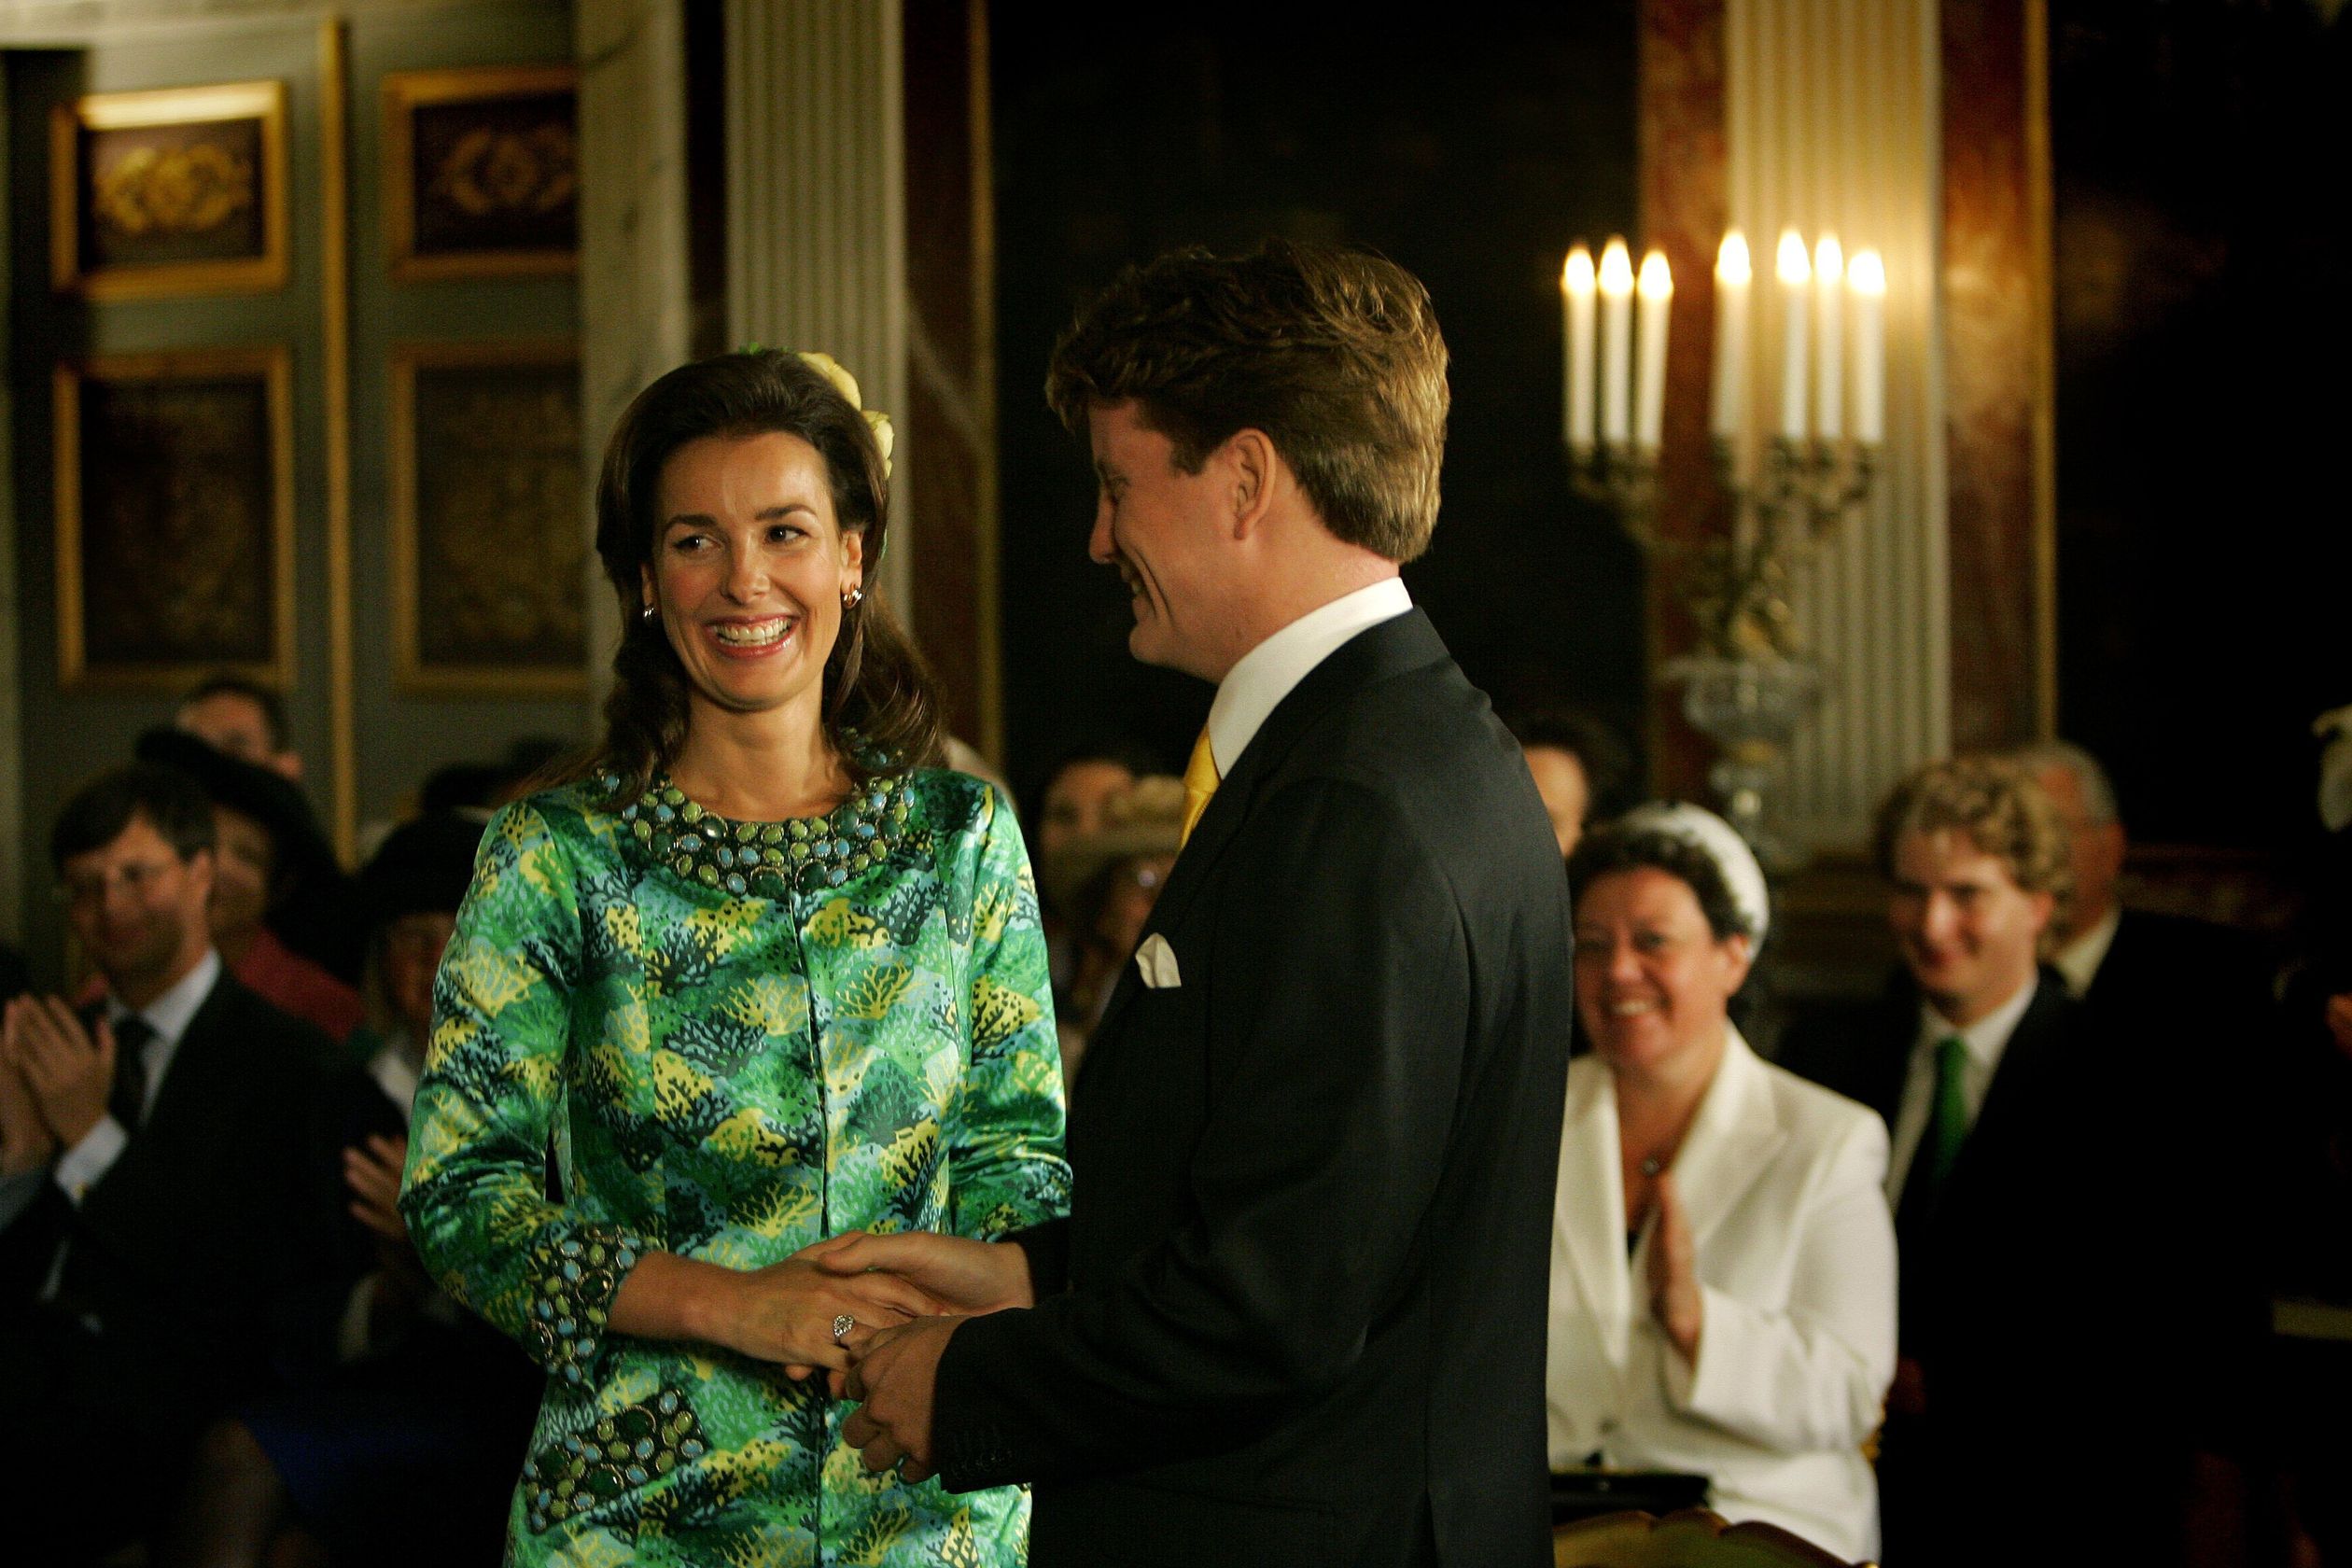 Prins Pieter-Christiaan en Anita van Eijk geven elkaar het jawoord bij hun burgerlijke huwelijk in